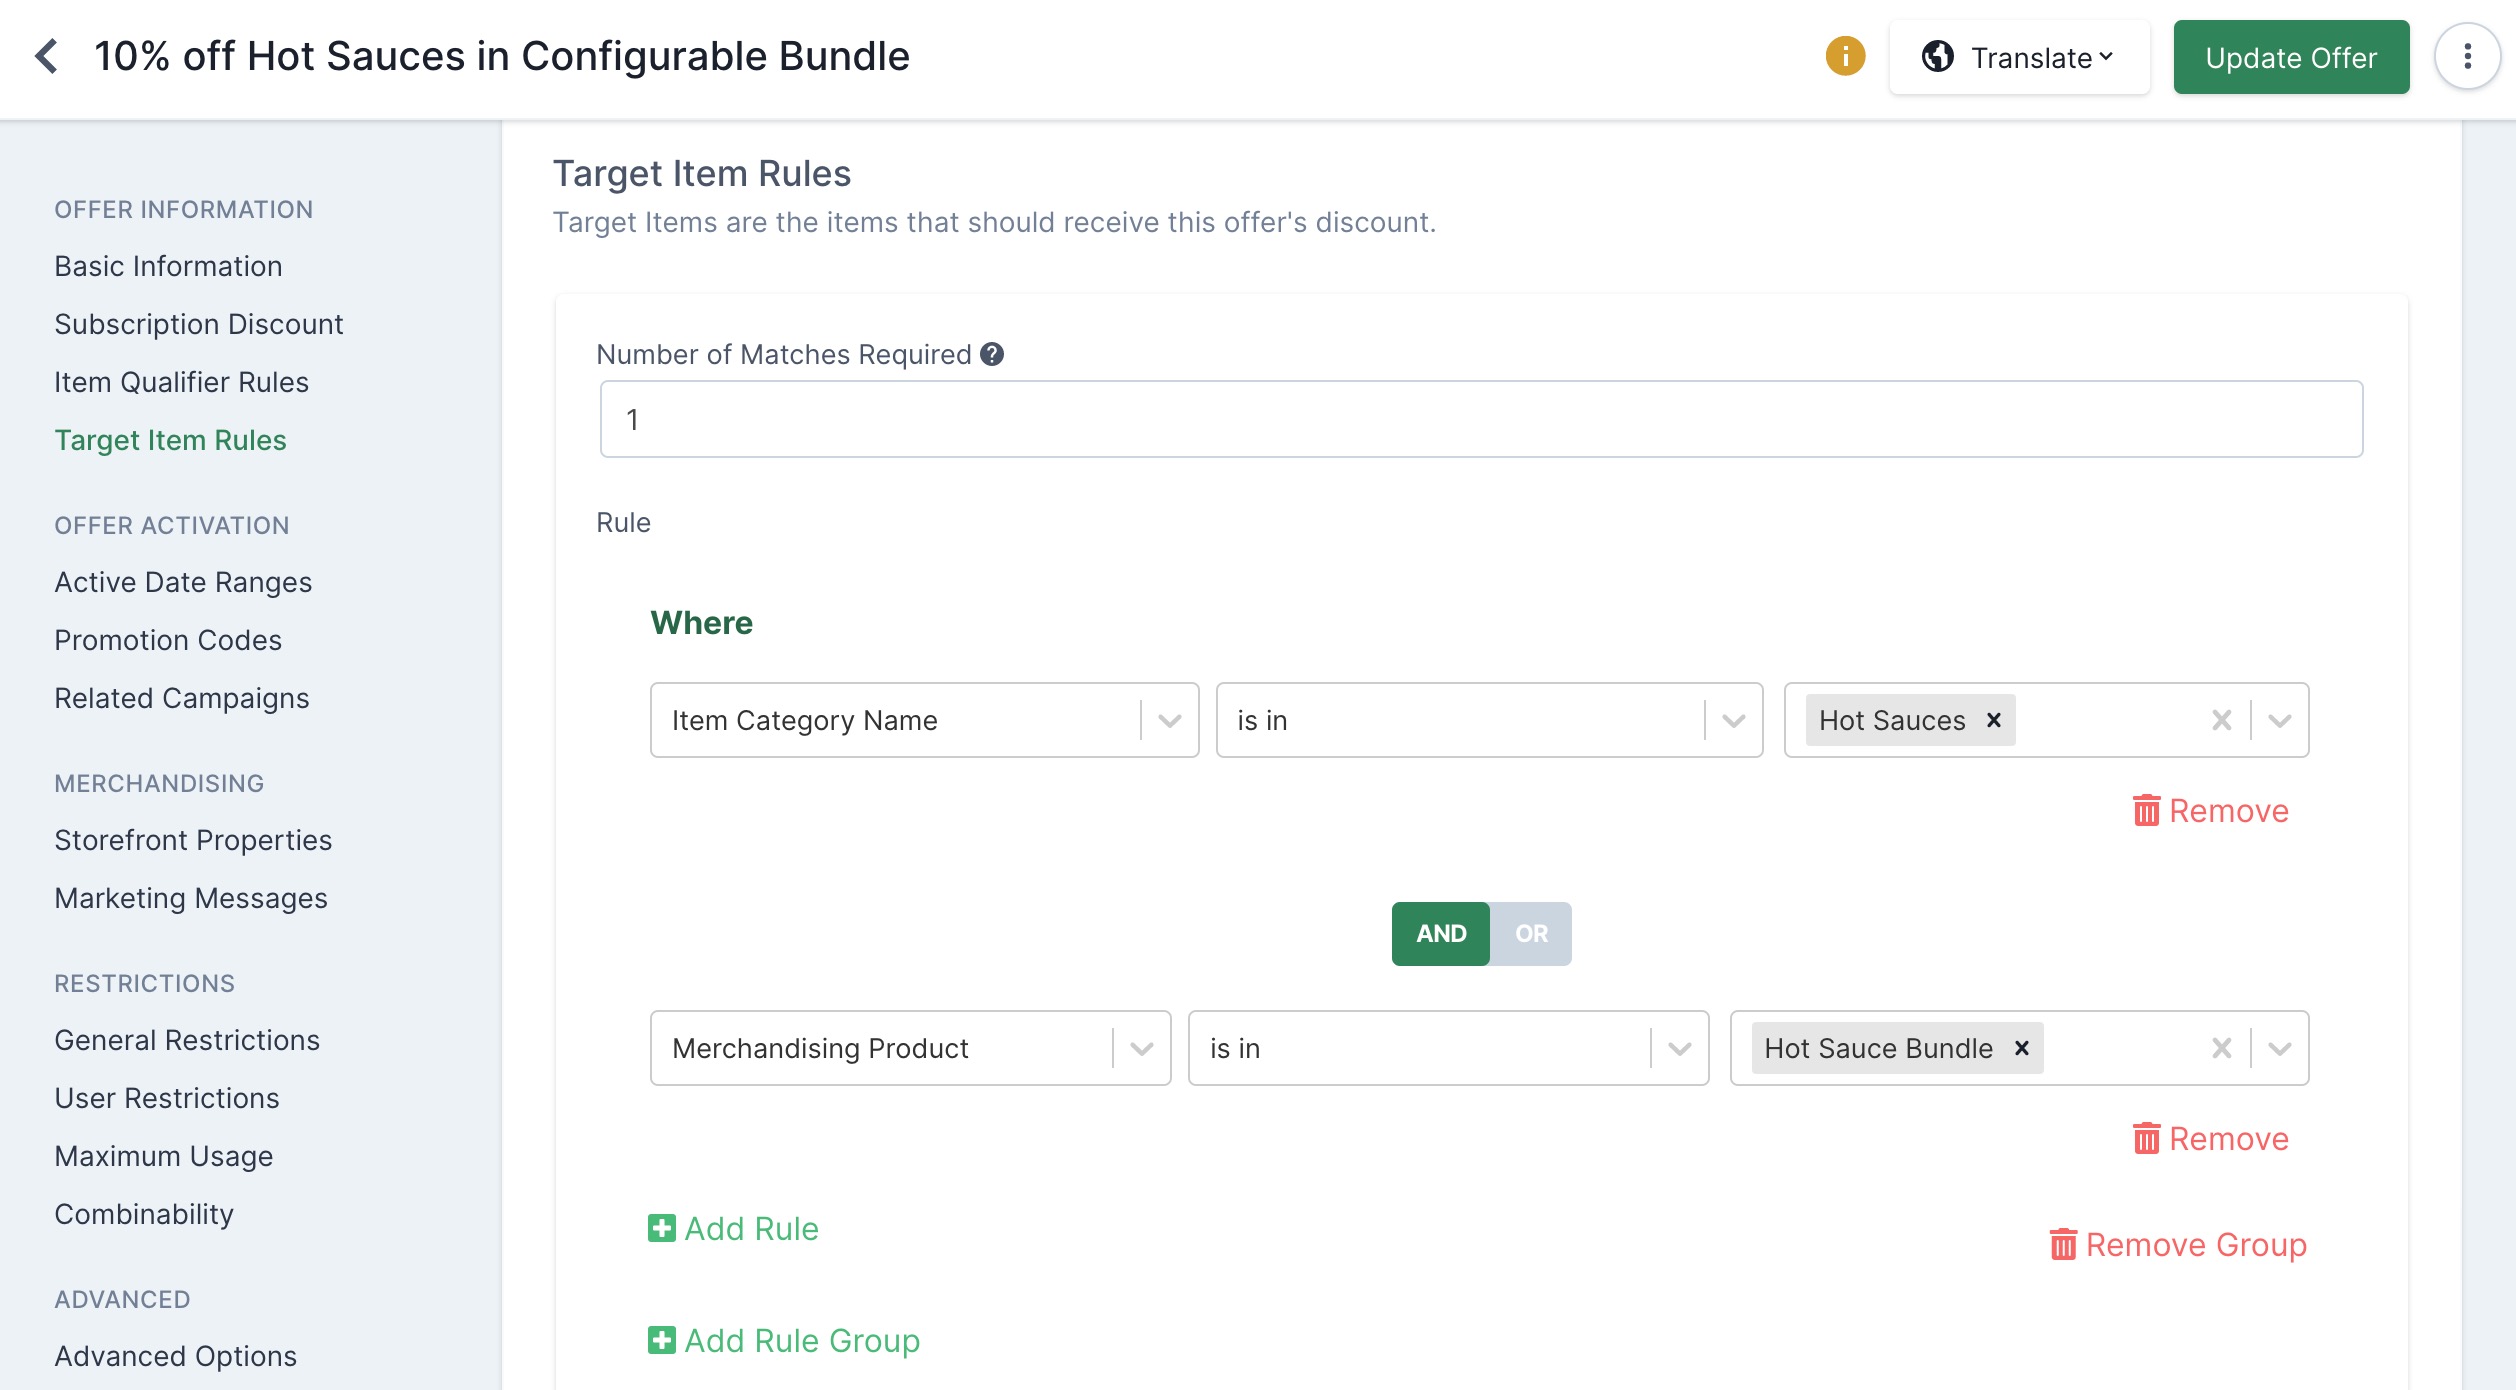 Configurable bundle offer